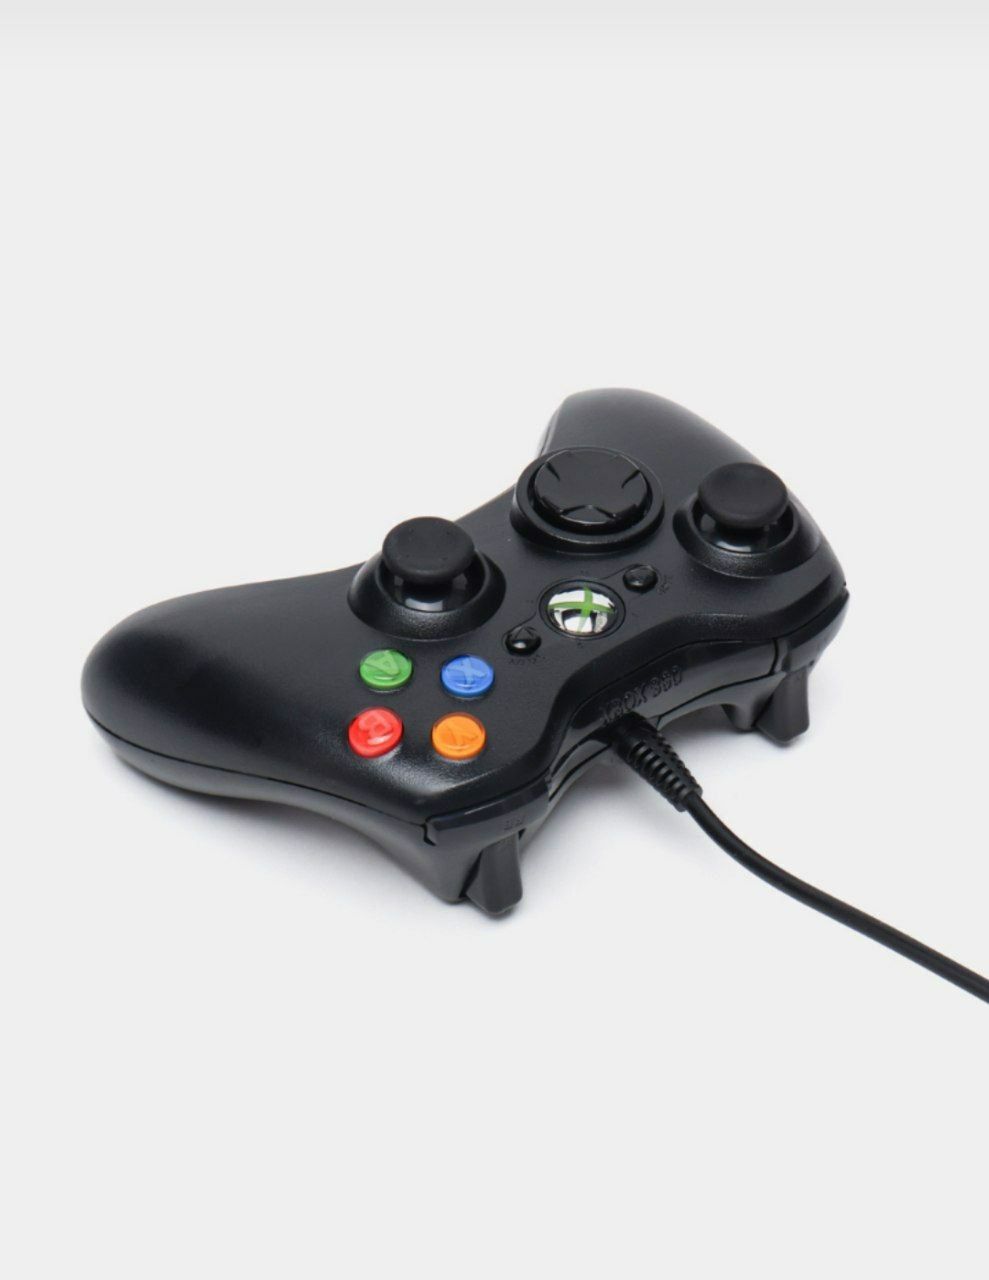 Xbox 360 joystick Xbox 360 джойстик Гарантия есть! Доставка есть!